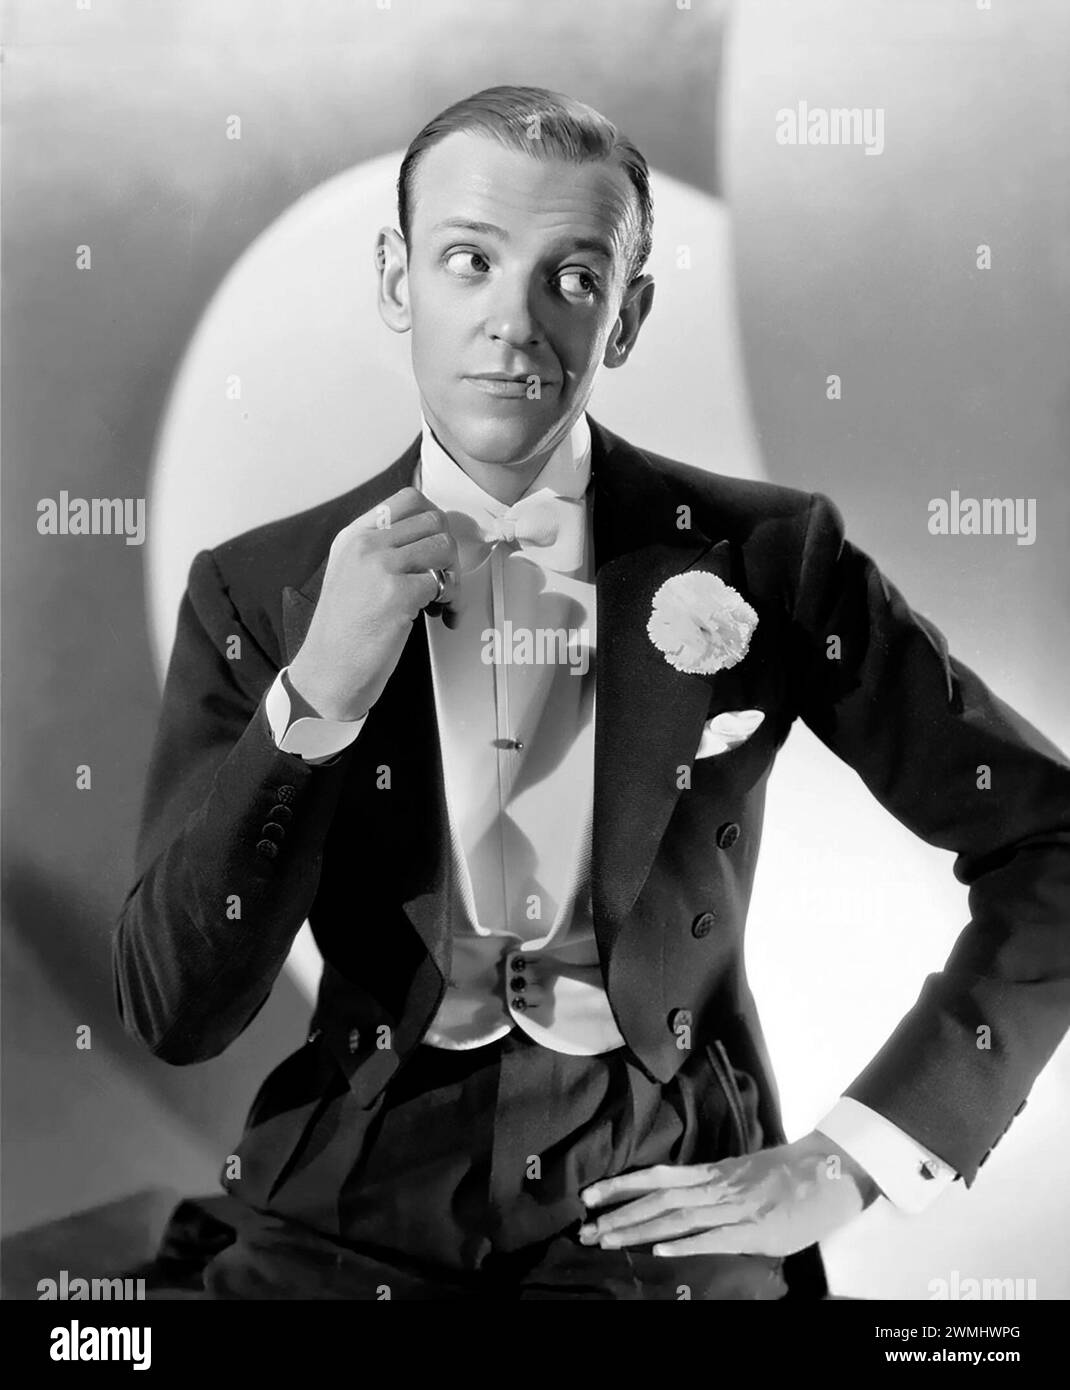 Fred Astaire. Ritratto dell'attore, cantante e ballerino americano Fred Astaire (nato Frederick Austerlitz; 1899-1987) pubblicità girata per il film You'll Never Get Rich, 1941 Foto Stock